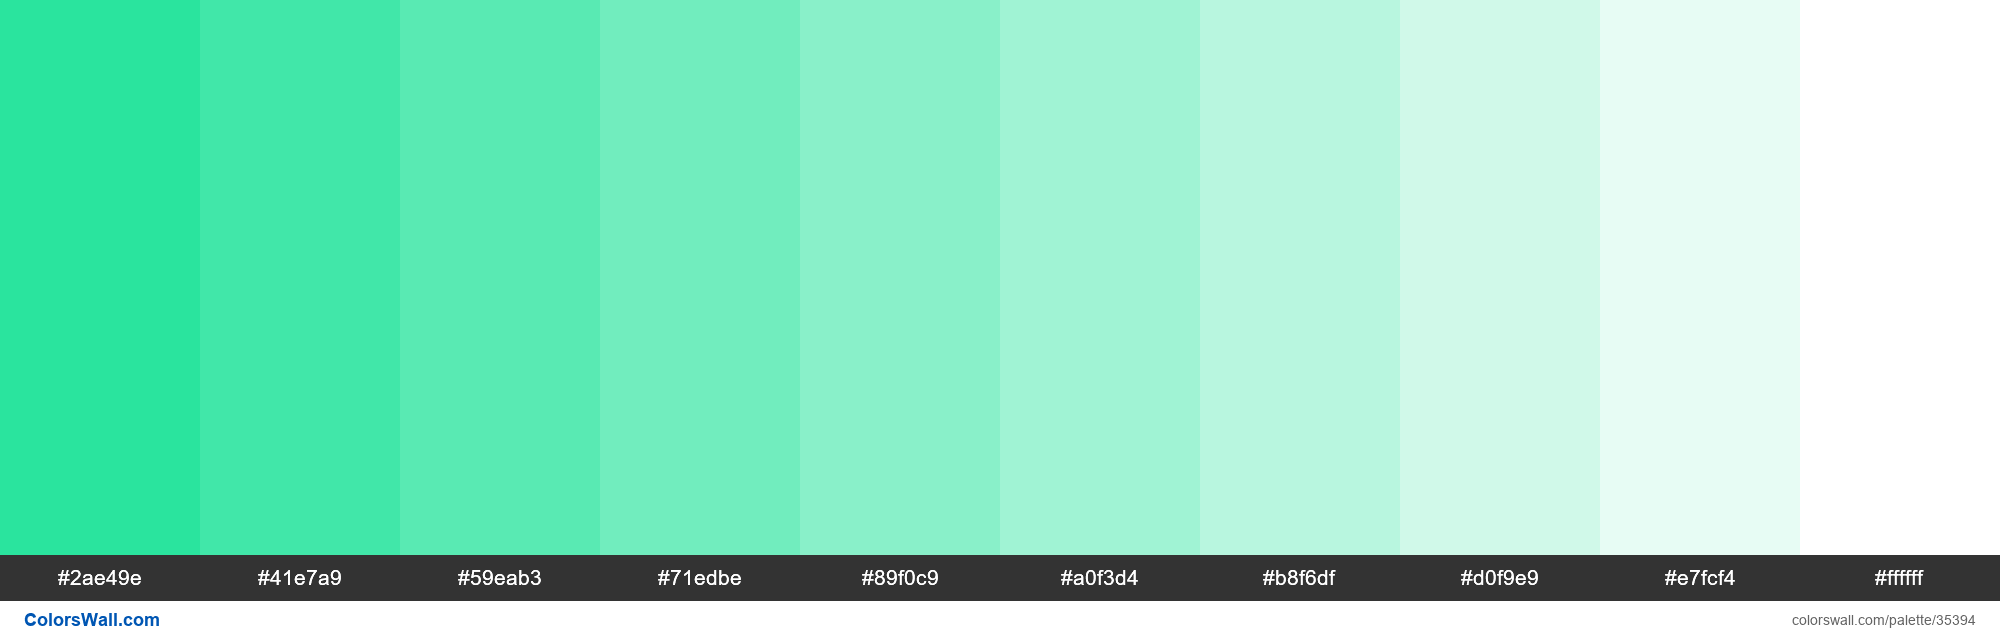 Tints XKCD Color aqua green #12e193 hex paleta de colores - ColorsWall